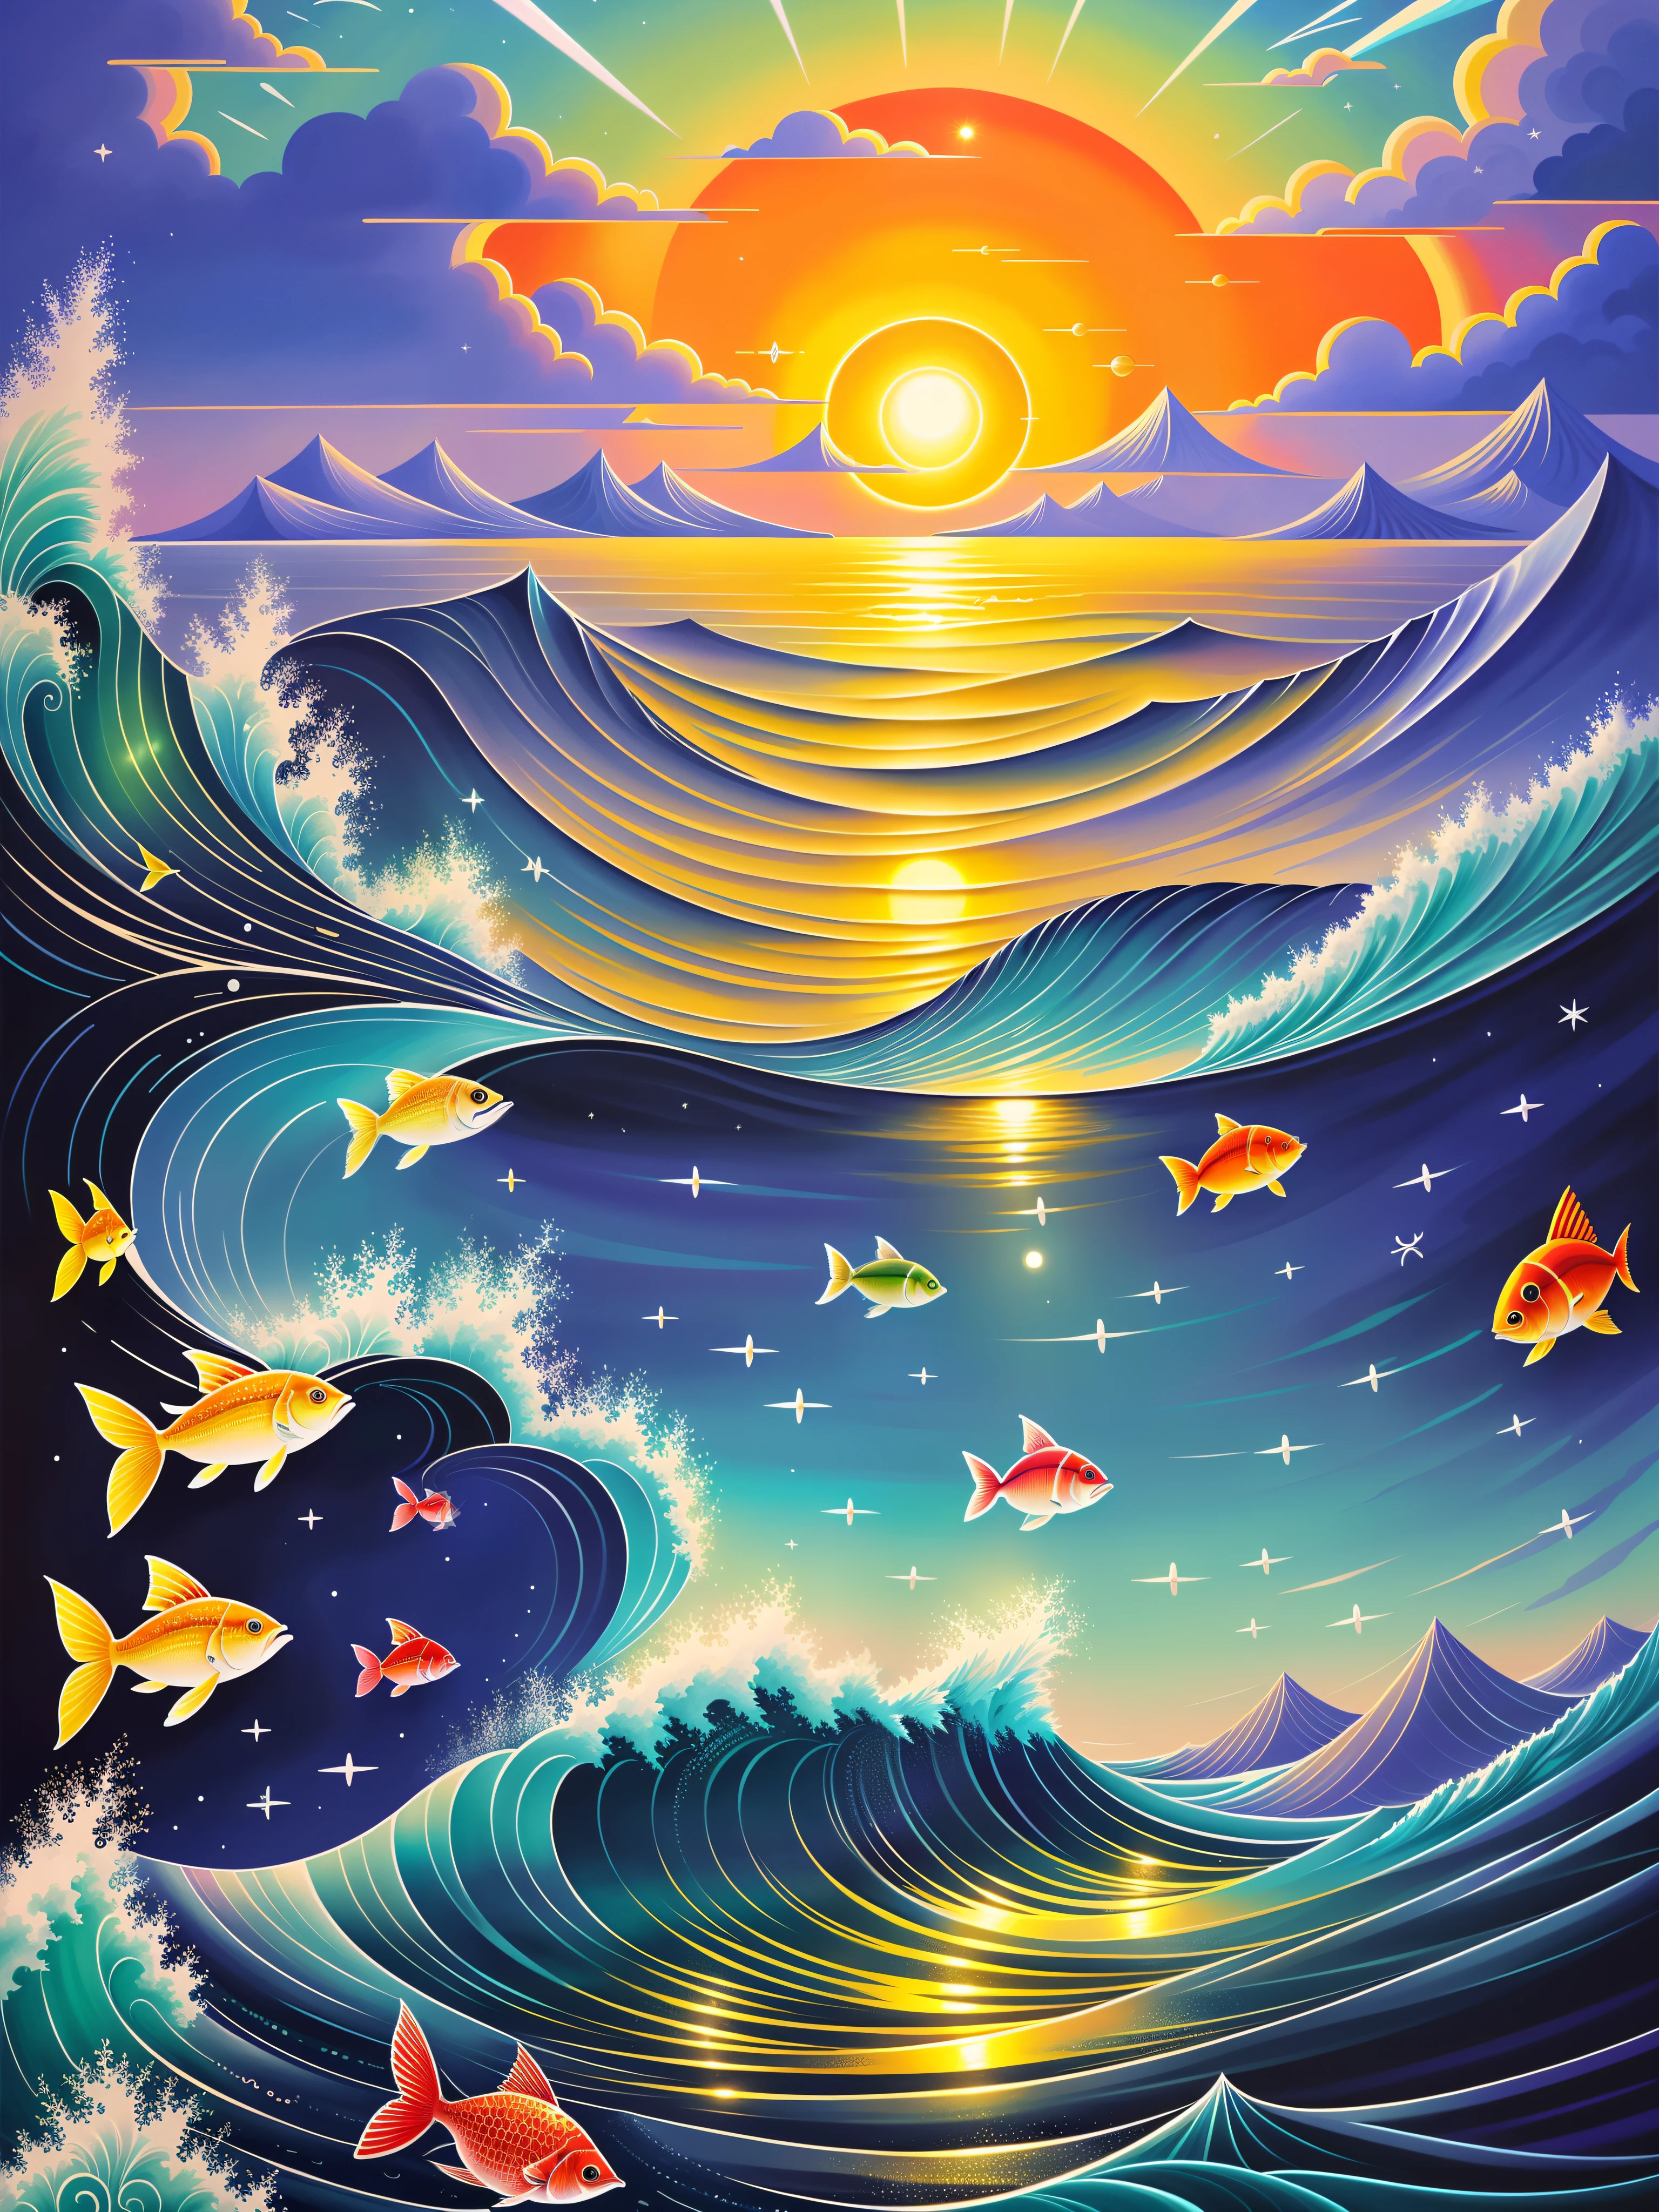 Meeresszene mit farbenfroher Abbildung von Sonne und Fisch, （（（Mond voll））），Viel Fisch，jen bartel, eine wunderschöne Kunstwerkillustration, magischer Ozean, Inspiriert von Cyril Rolando, fantasie meer landschaft, Schöne Kunst UHD 8 K, hochdetailliertes digitales Gemälde, Im Stil von Cyril Rolando, 8K hochdetaillierte digitale Kunst, detaillierte Traumlandschaft, bunt flach surreal ätherisch, chaotische Meereskulisse